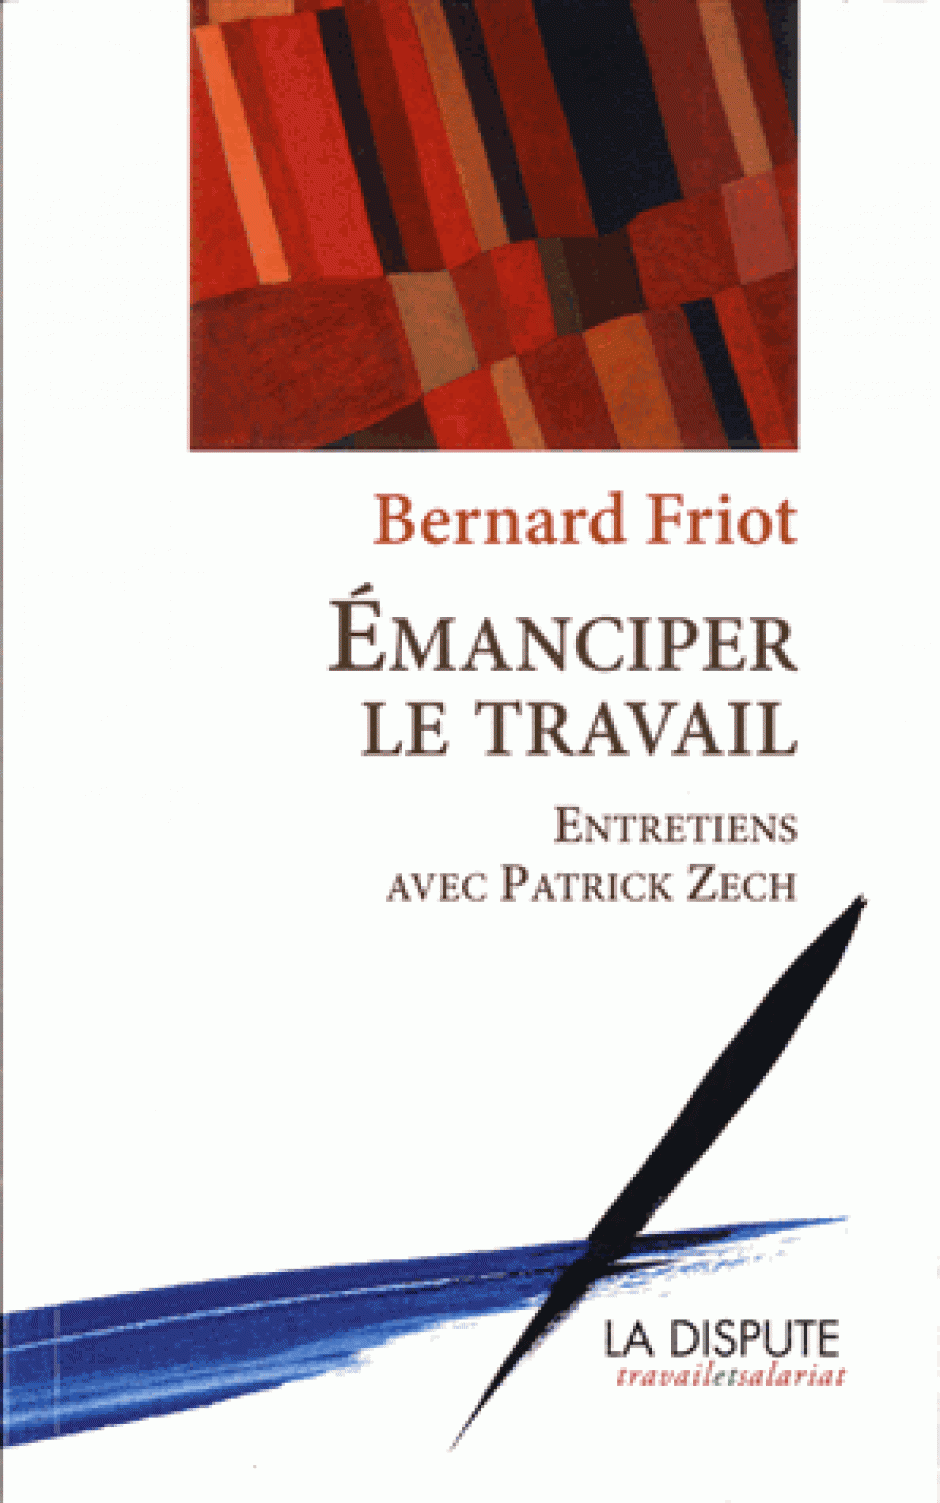 Emanciper le travail, Bernard Friot